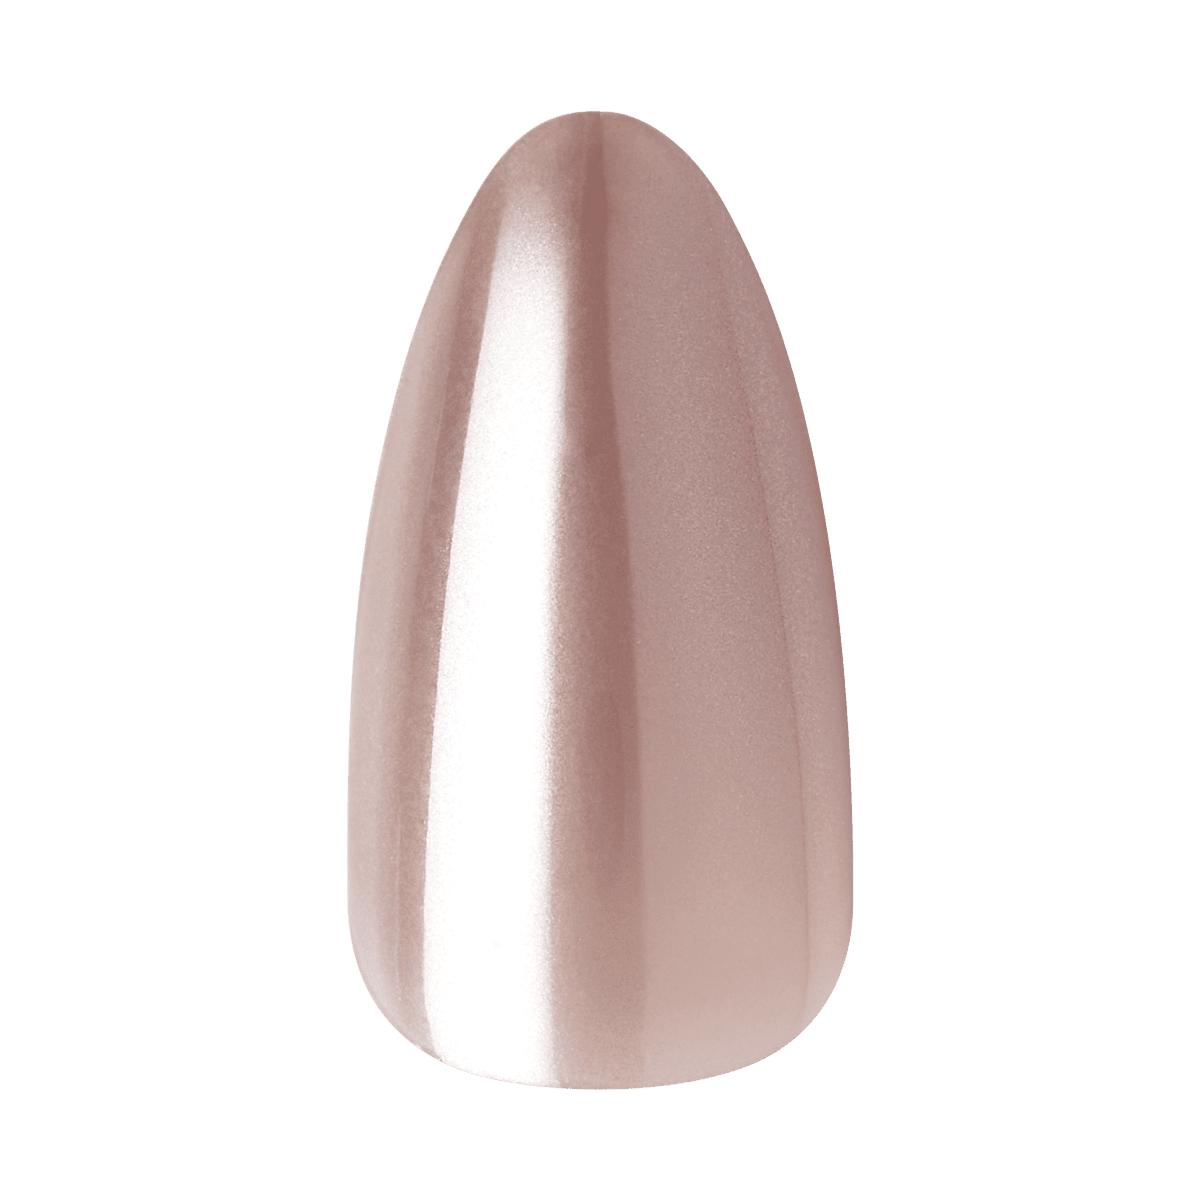 KISS Glazed Donut Nails - Choco Mint